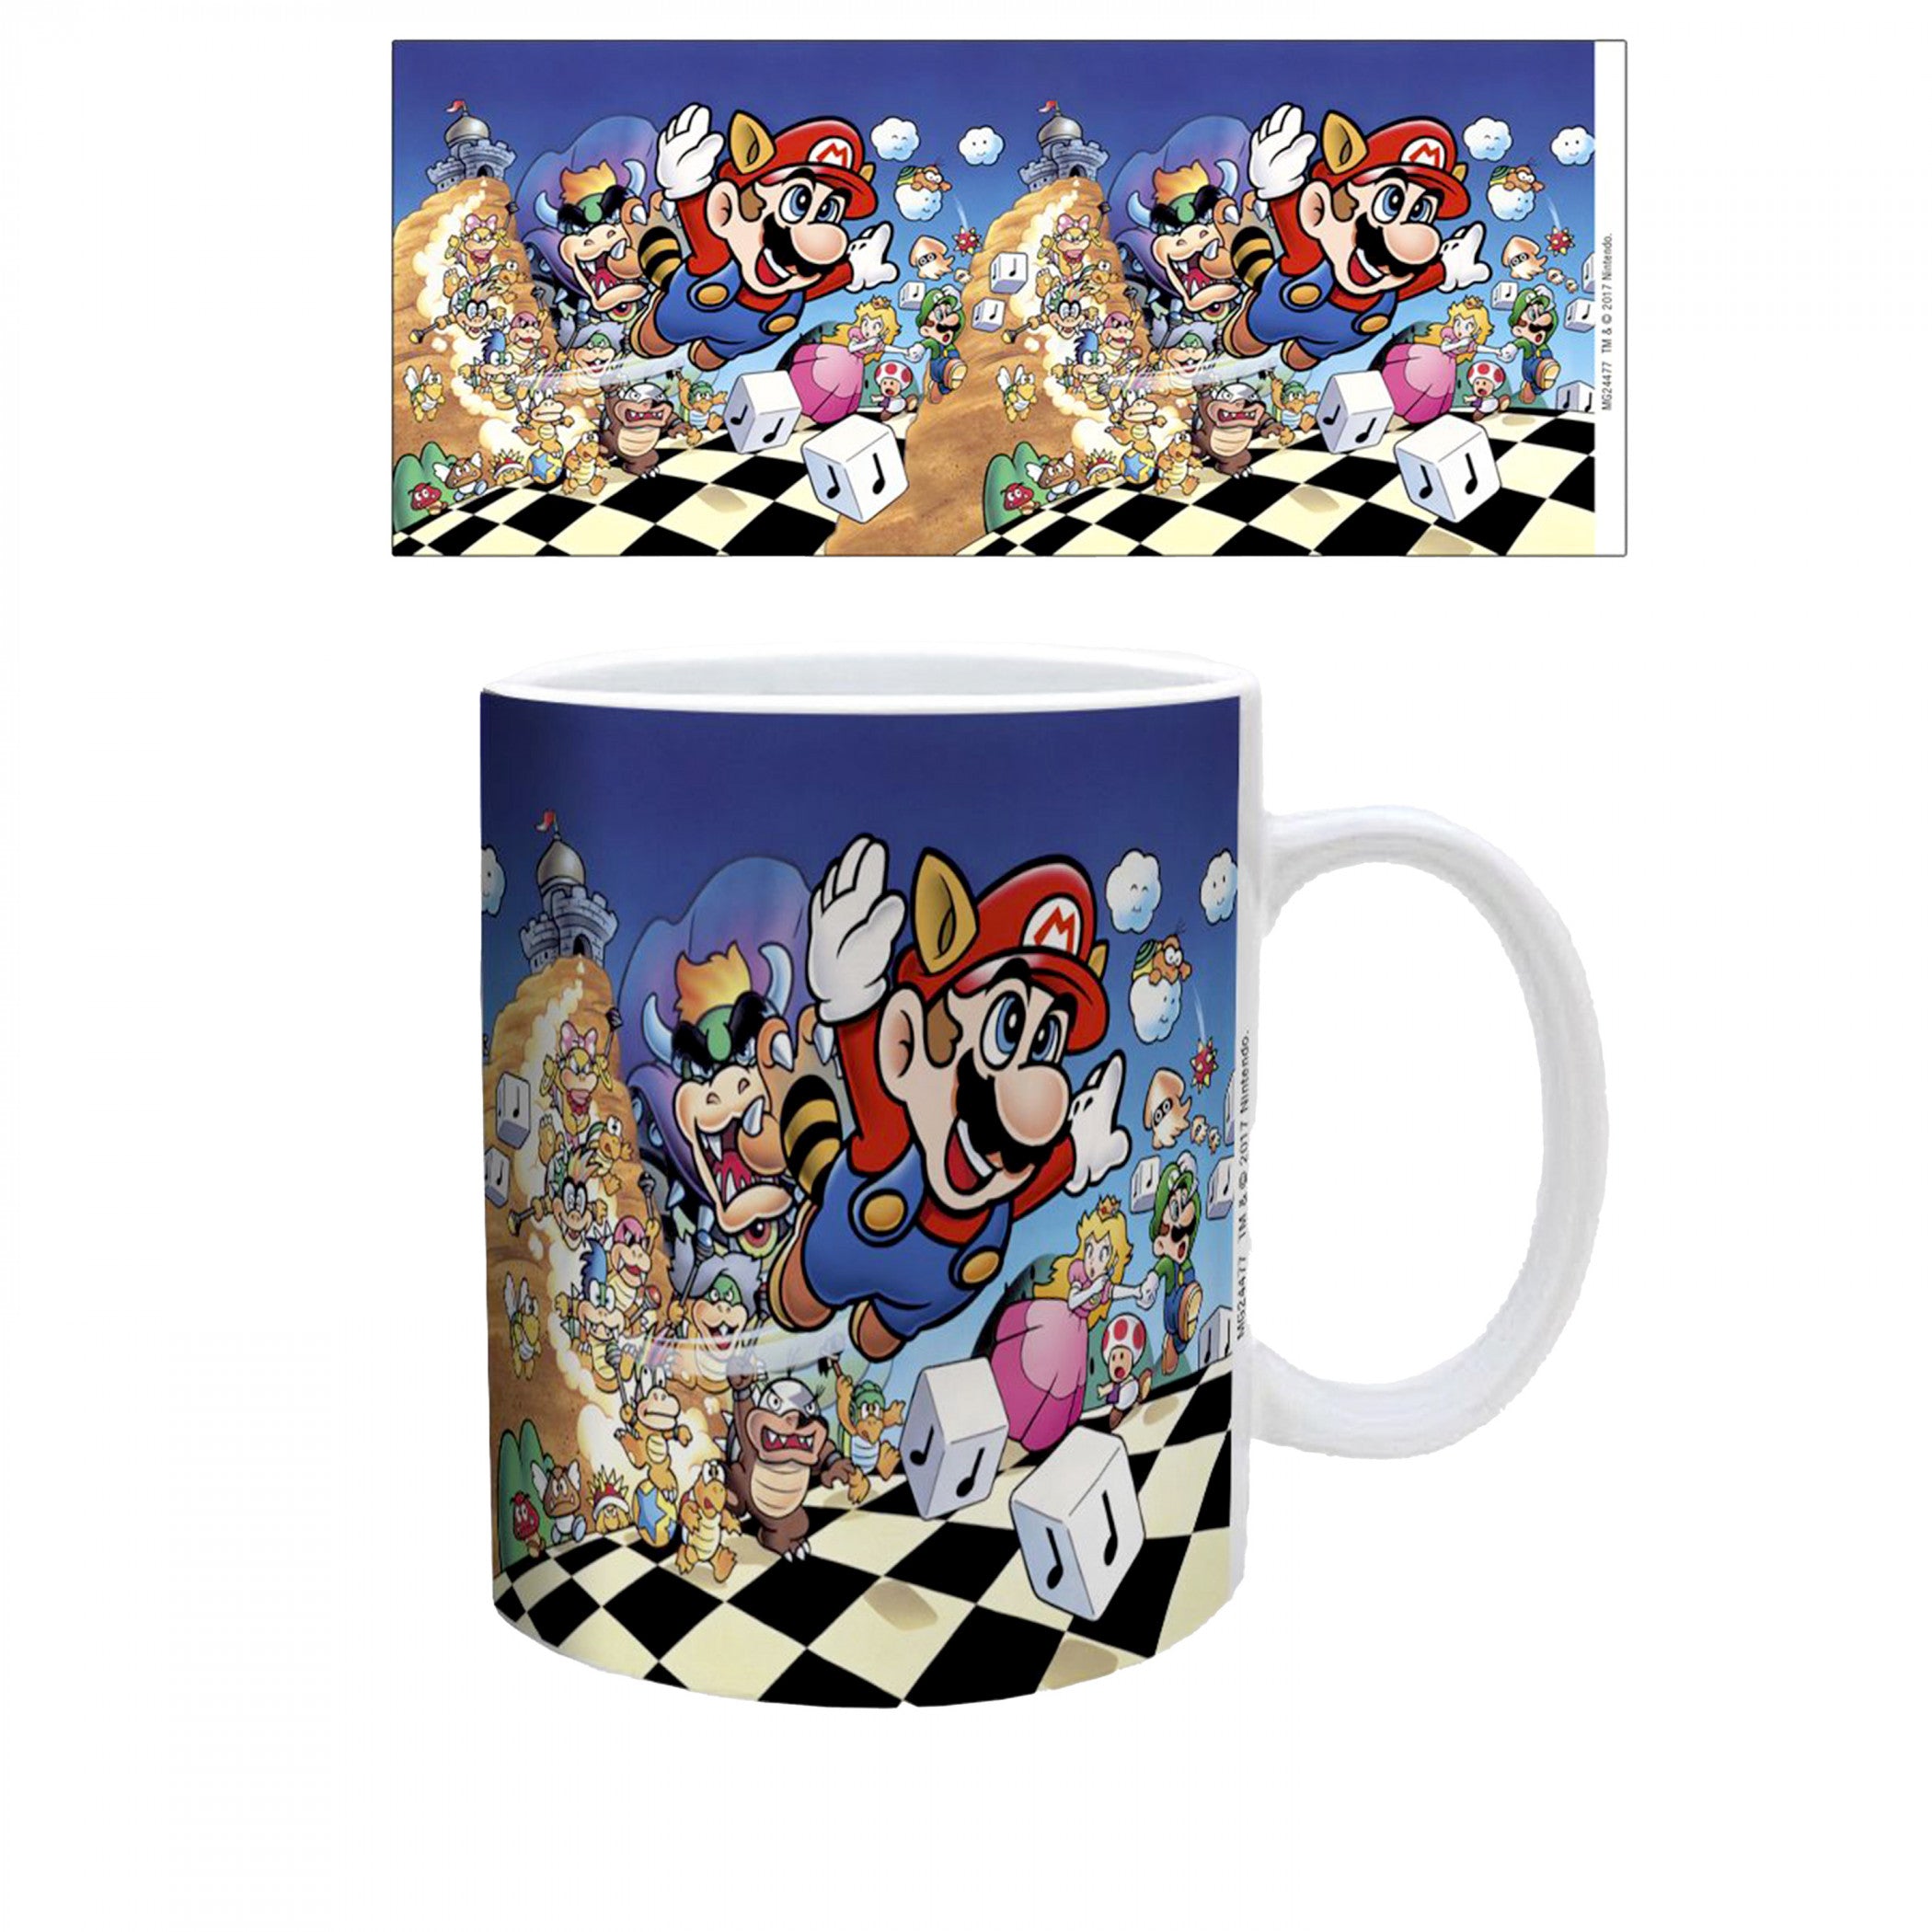 Super Mario Bros. 3 Art 11 oz. Ceramic Mug